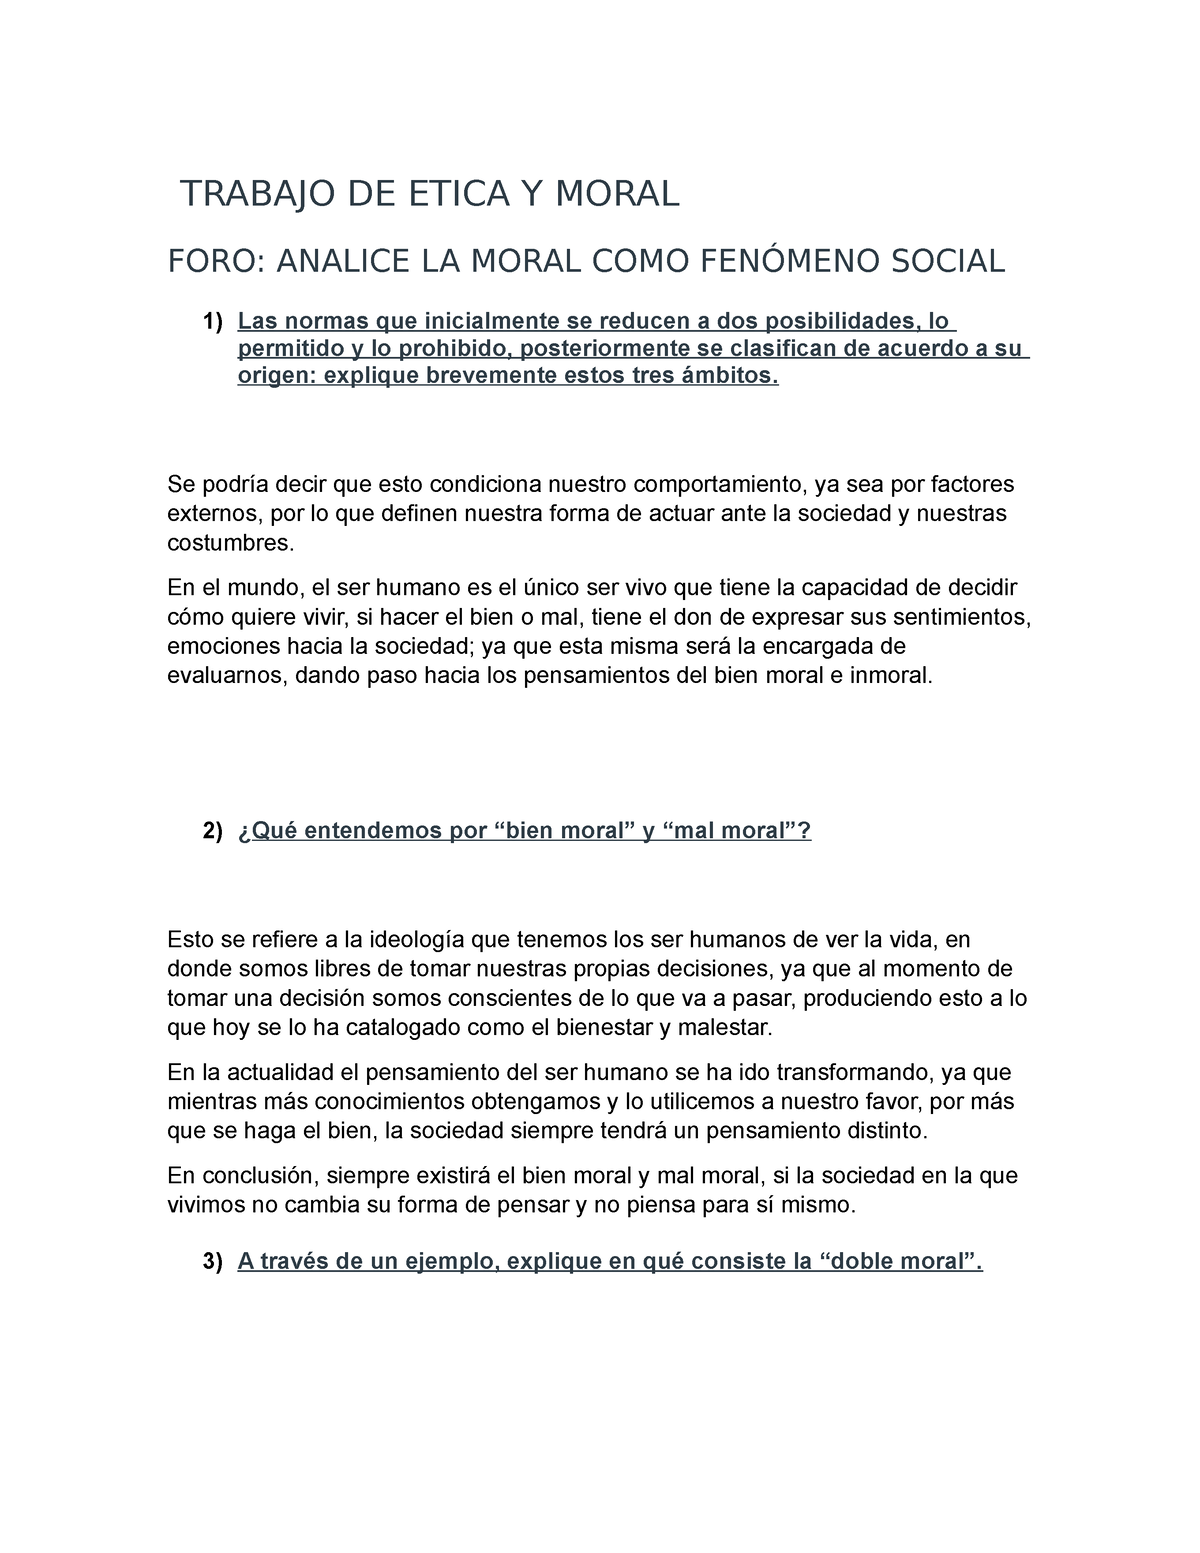 Trabajo De Etica Y Moral Trabajo De Etica Y Moral Foro Analice La Moral Como FenÓmeno Social 0317